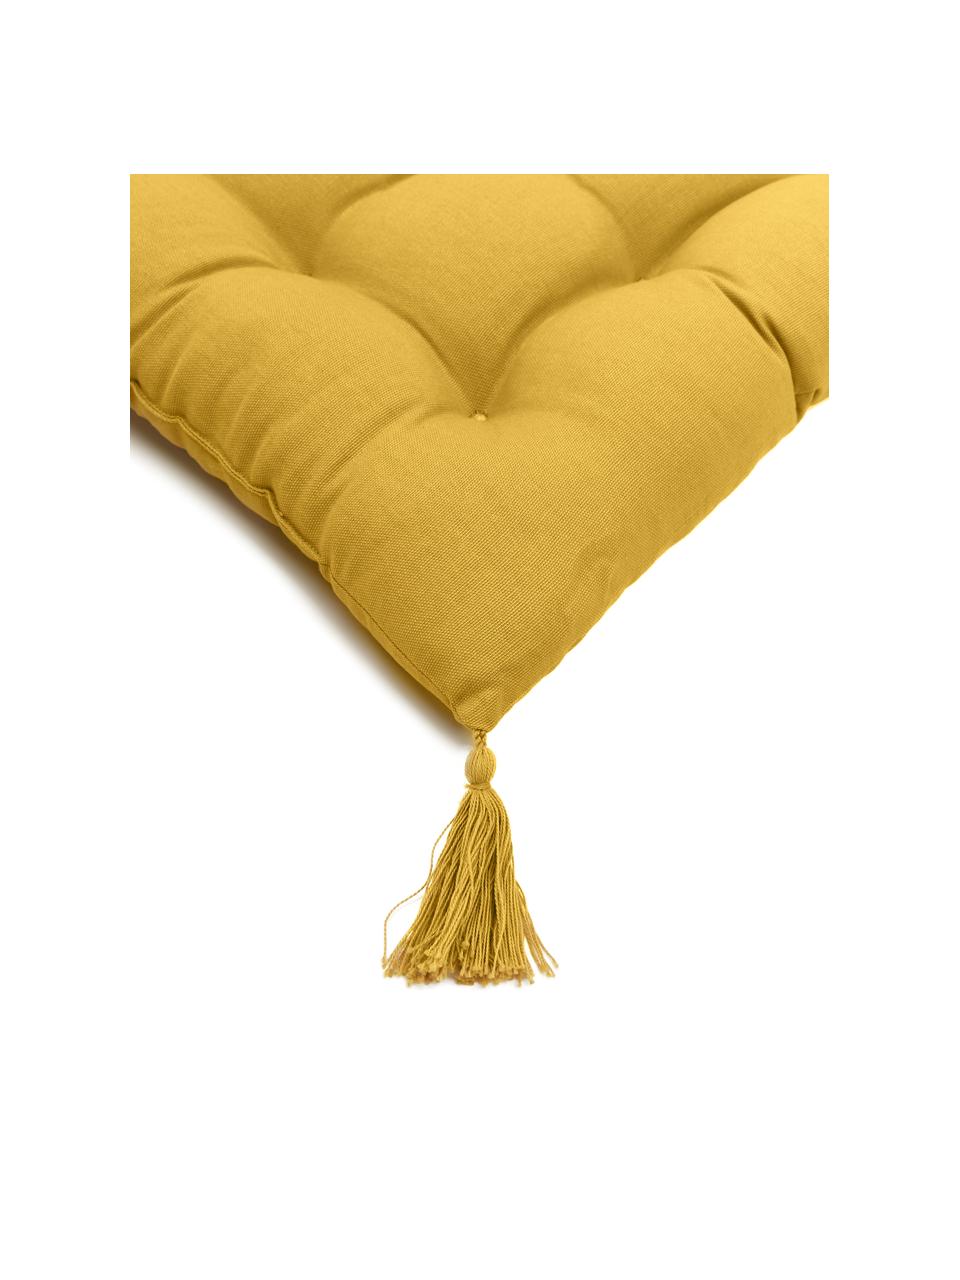 Katoenen stoelkussen Ava in geel met kwastjes, Geel, B 40 x L 40 cm